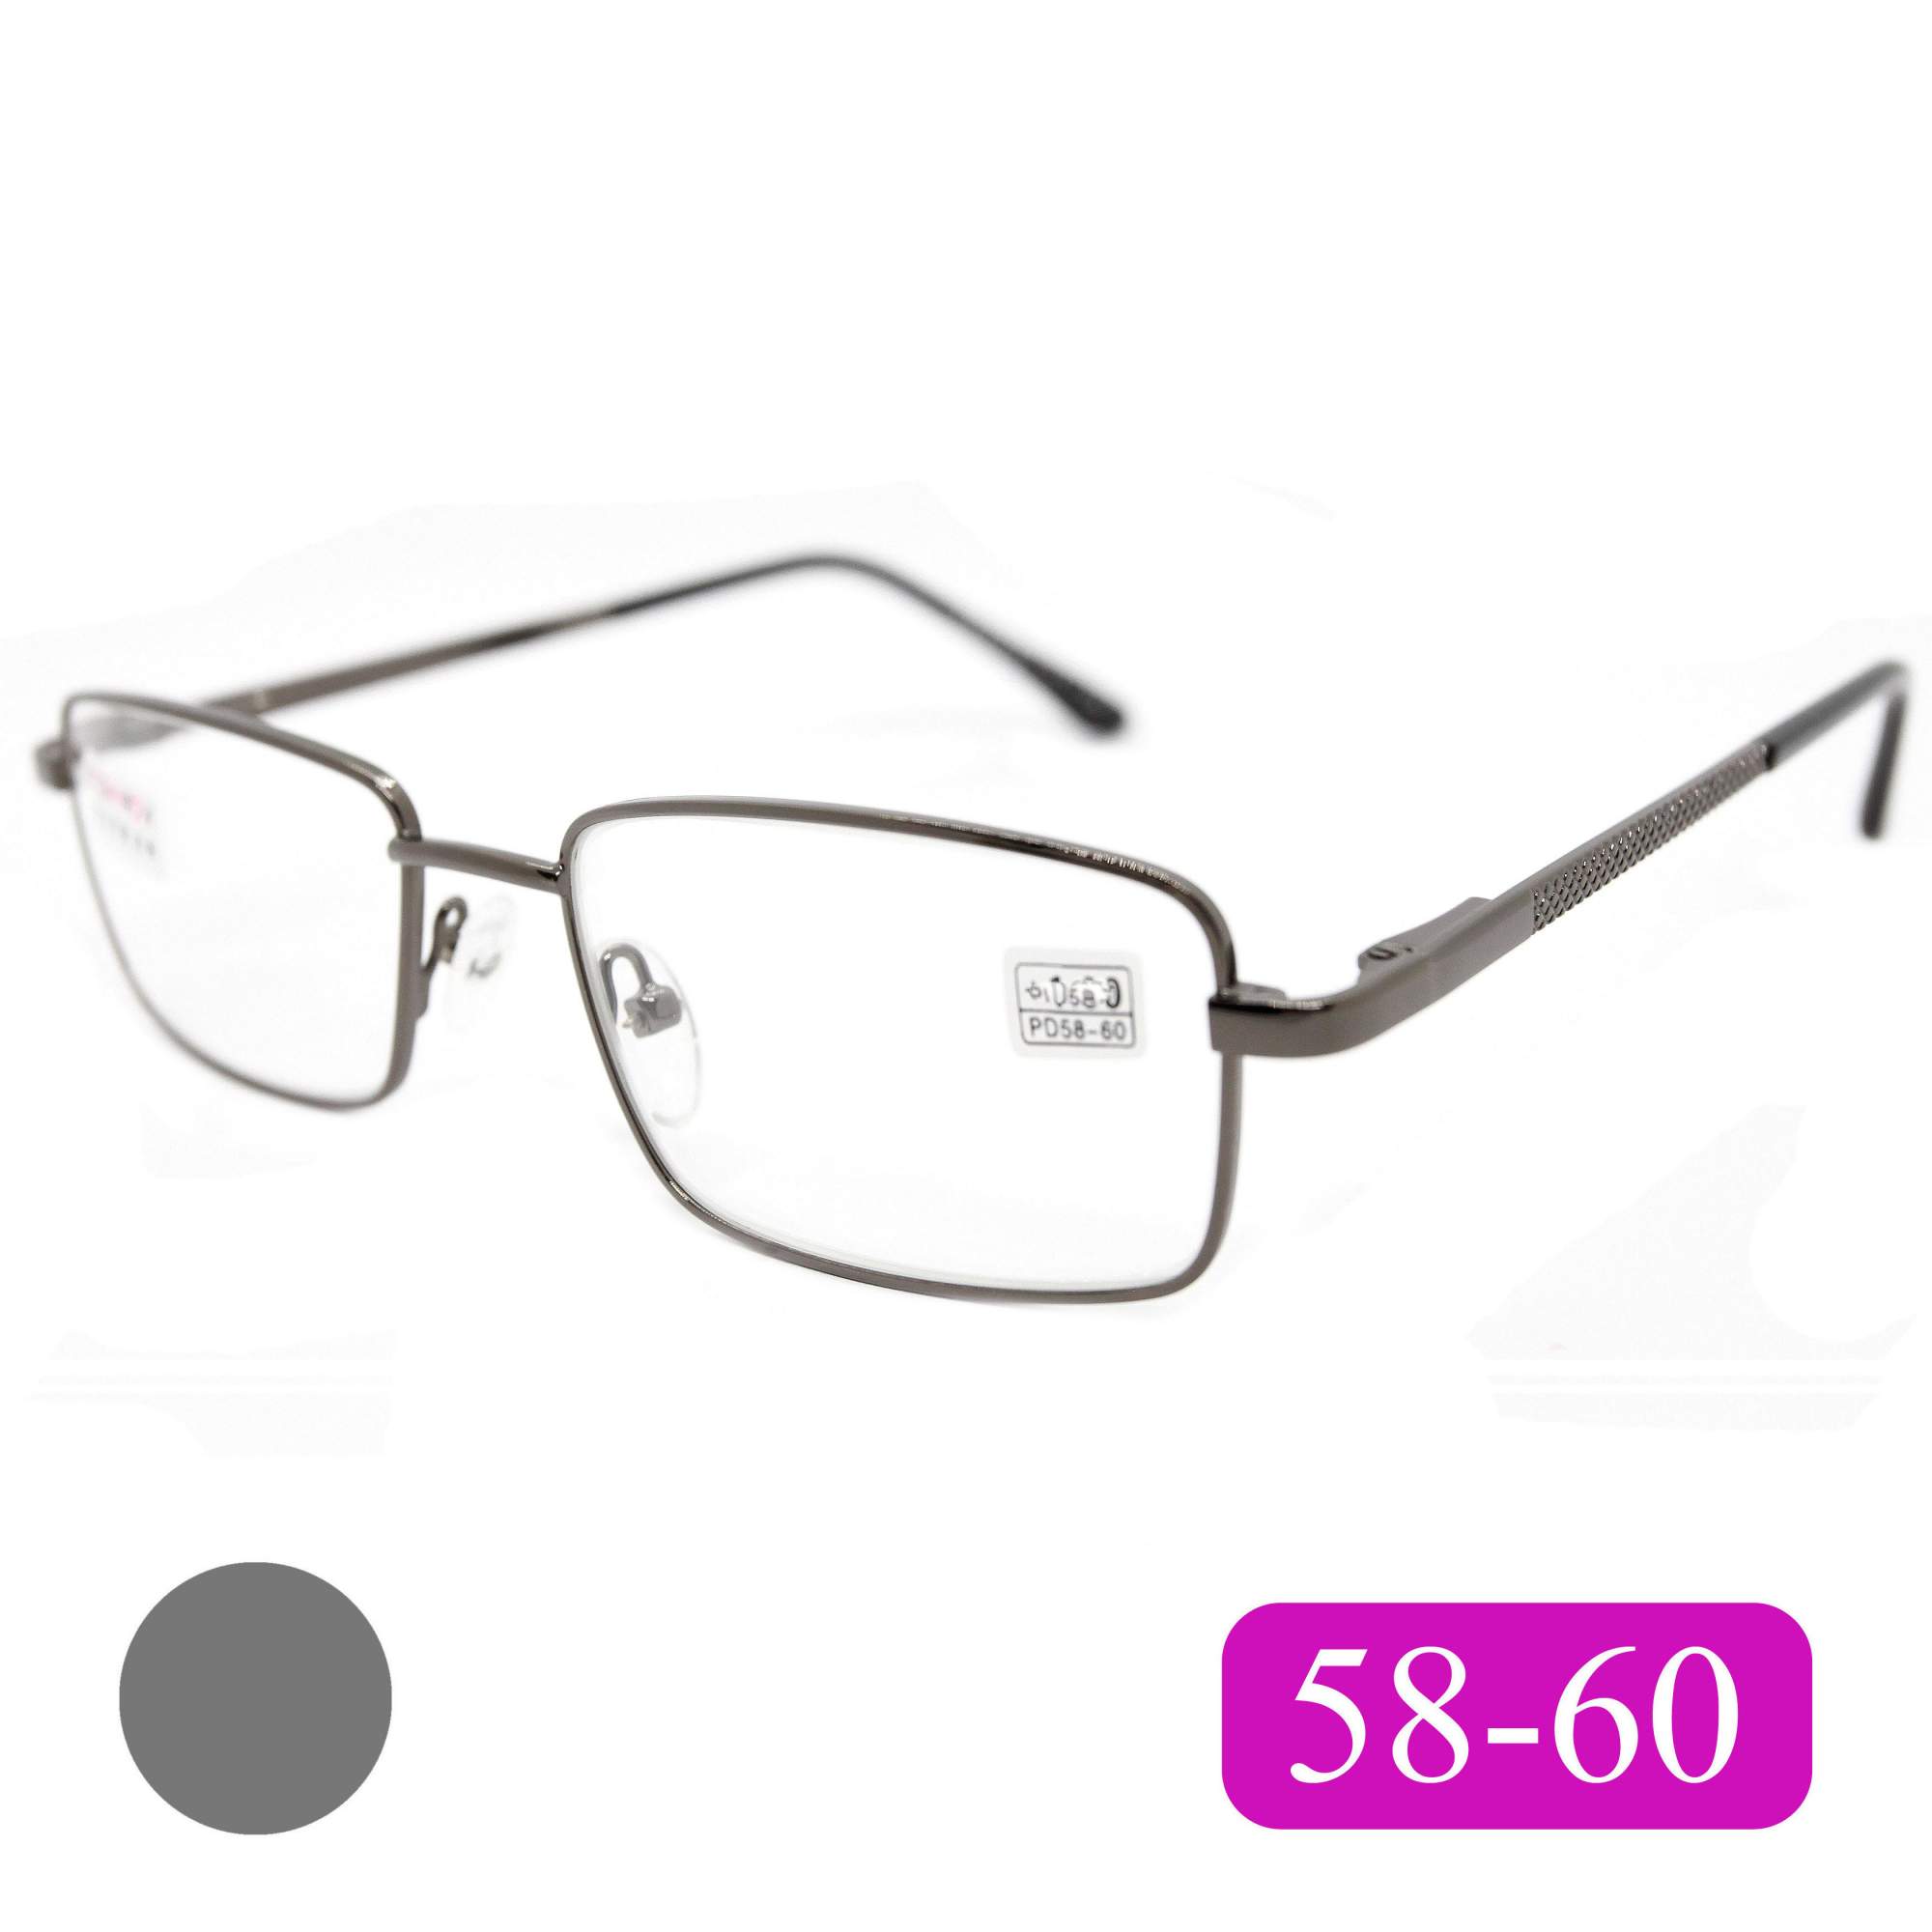 Готовые очки Fedrov 569, со стеклянной линзой, +2,75, без футляра, цвет серый, РЦ 58-60